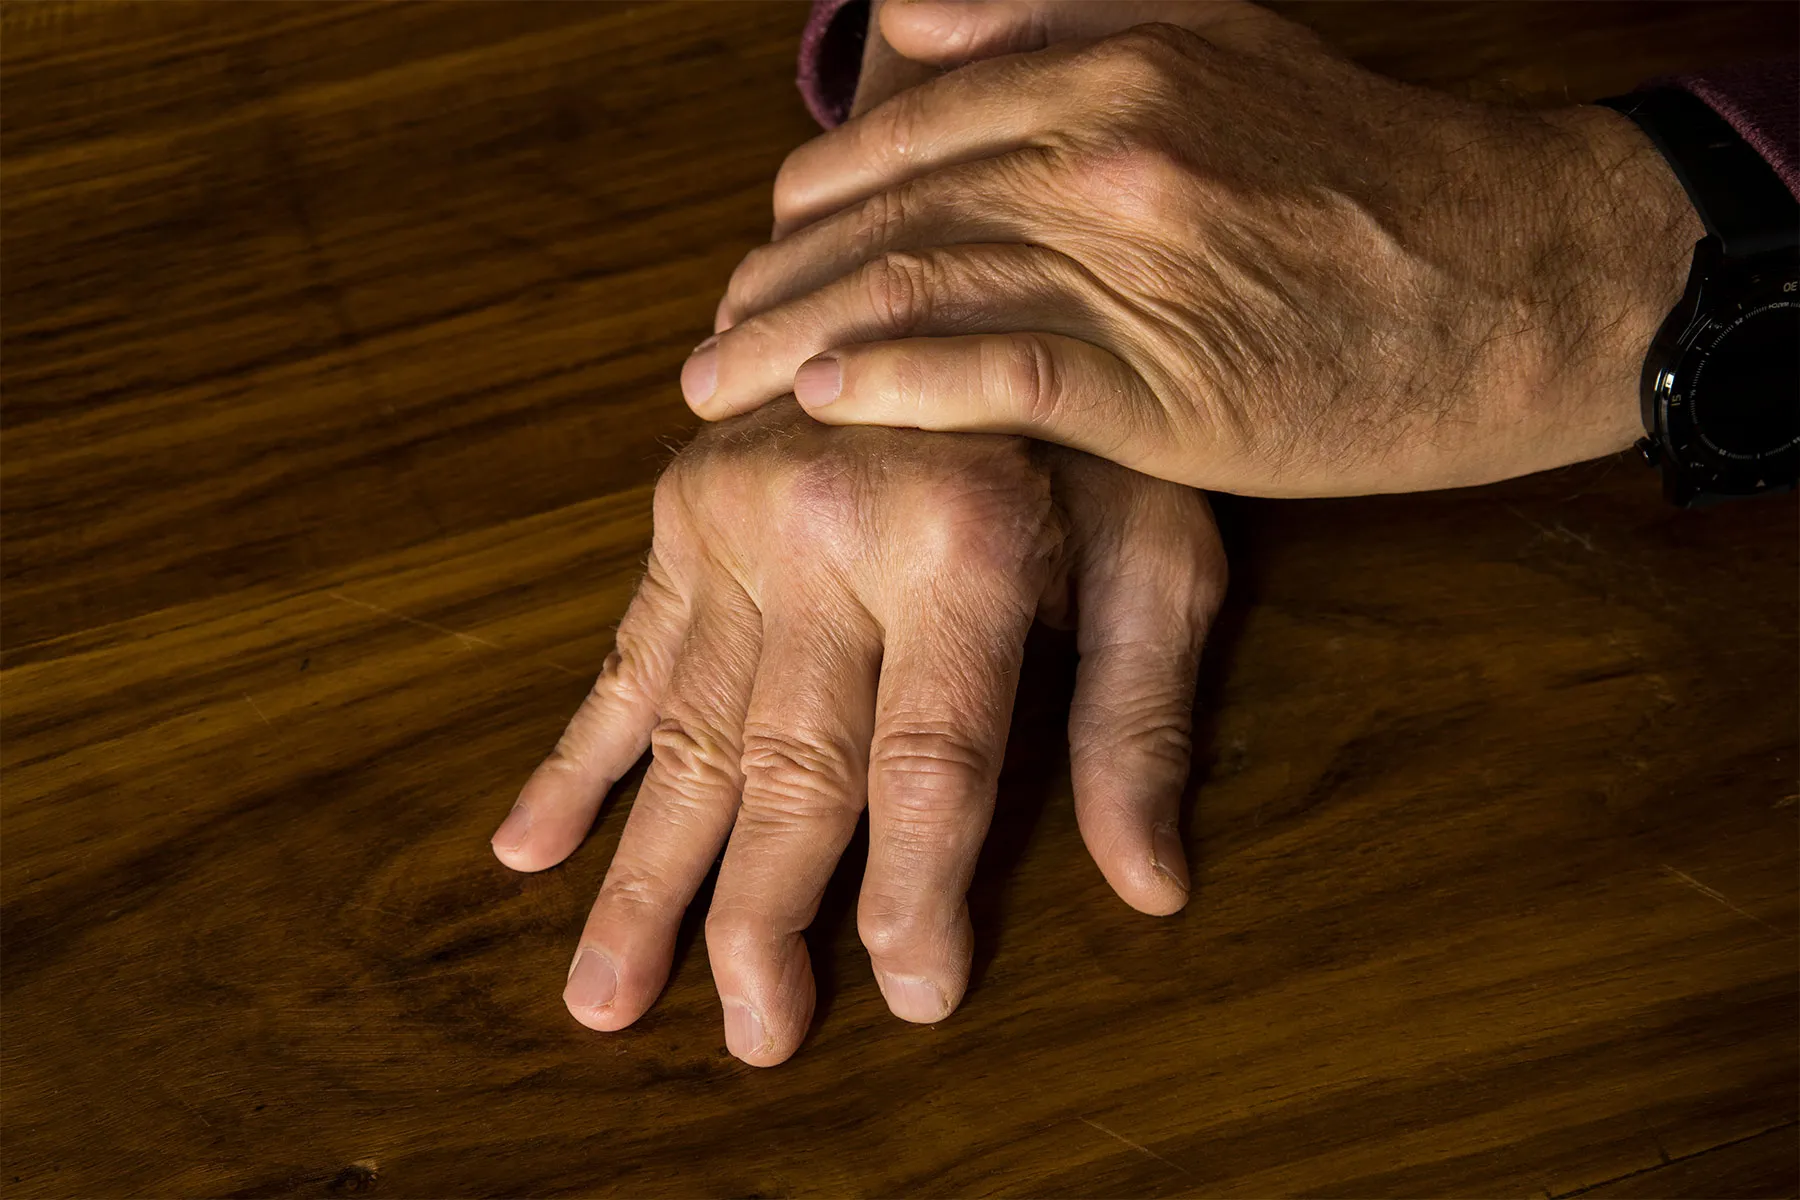 Sorotan: Tren yang Saya Lihat dalam Perawatan Psoriatic Arthritis